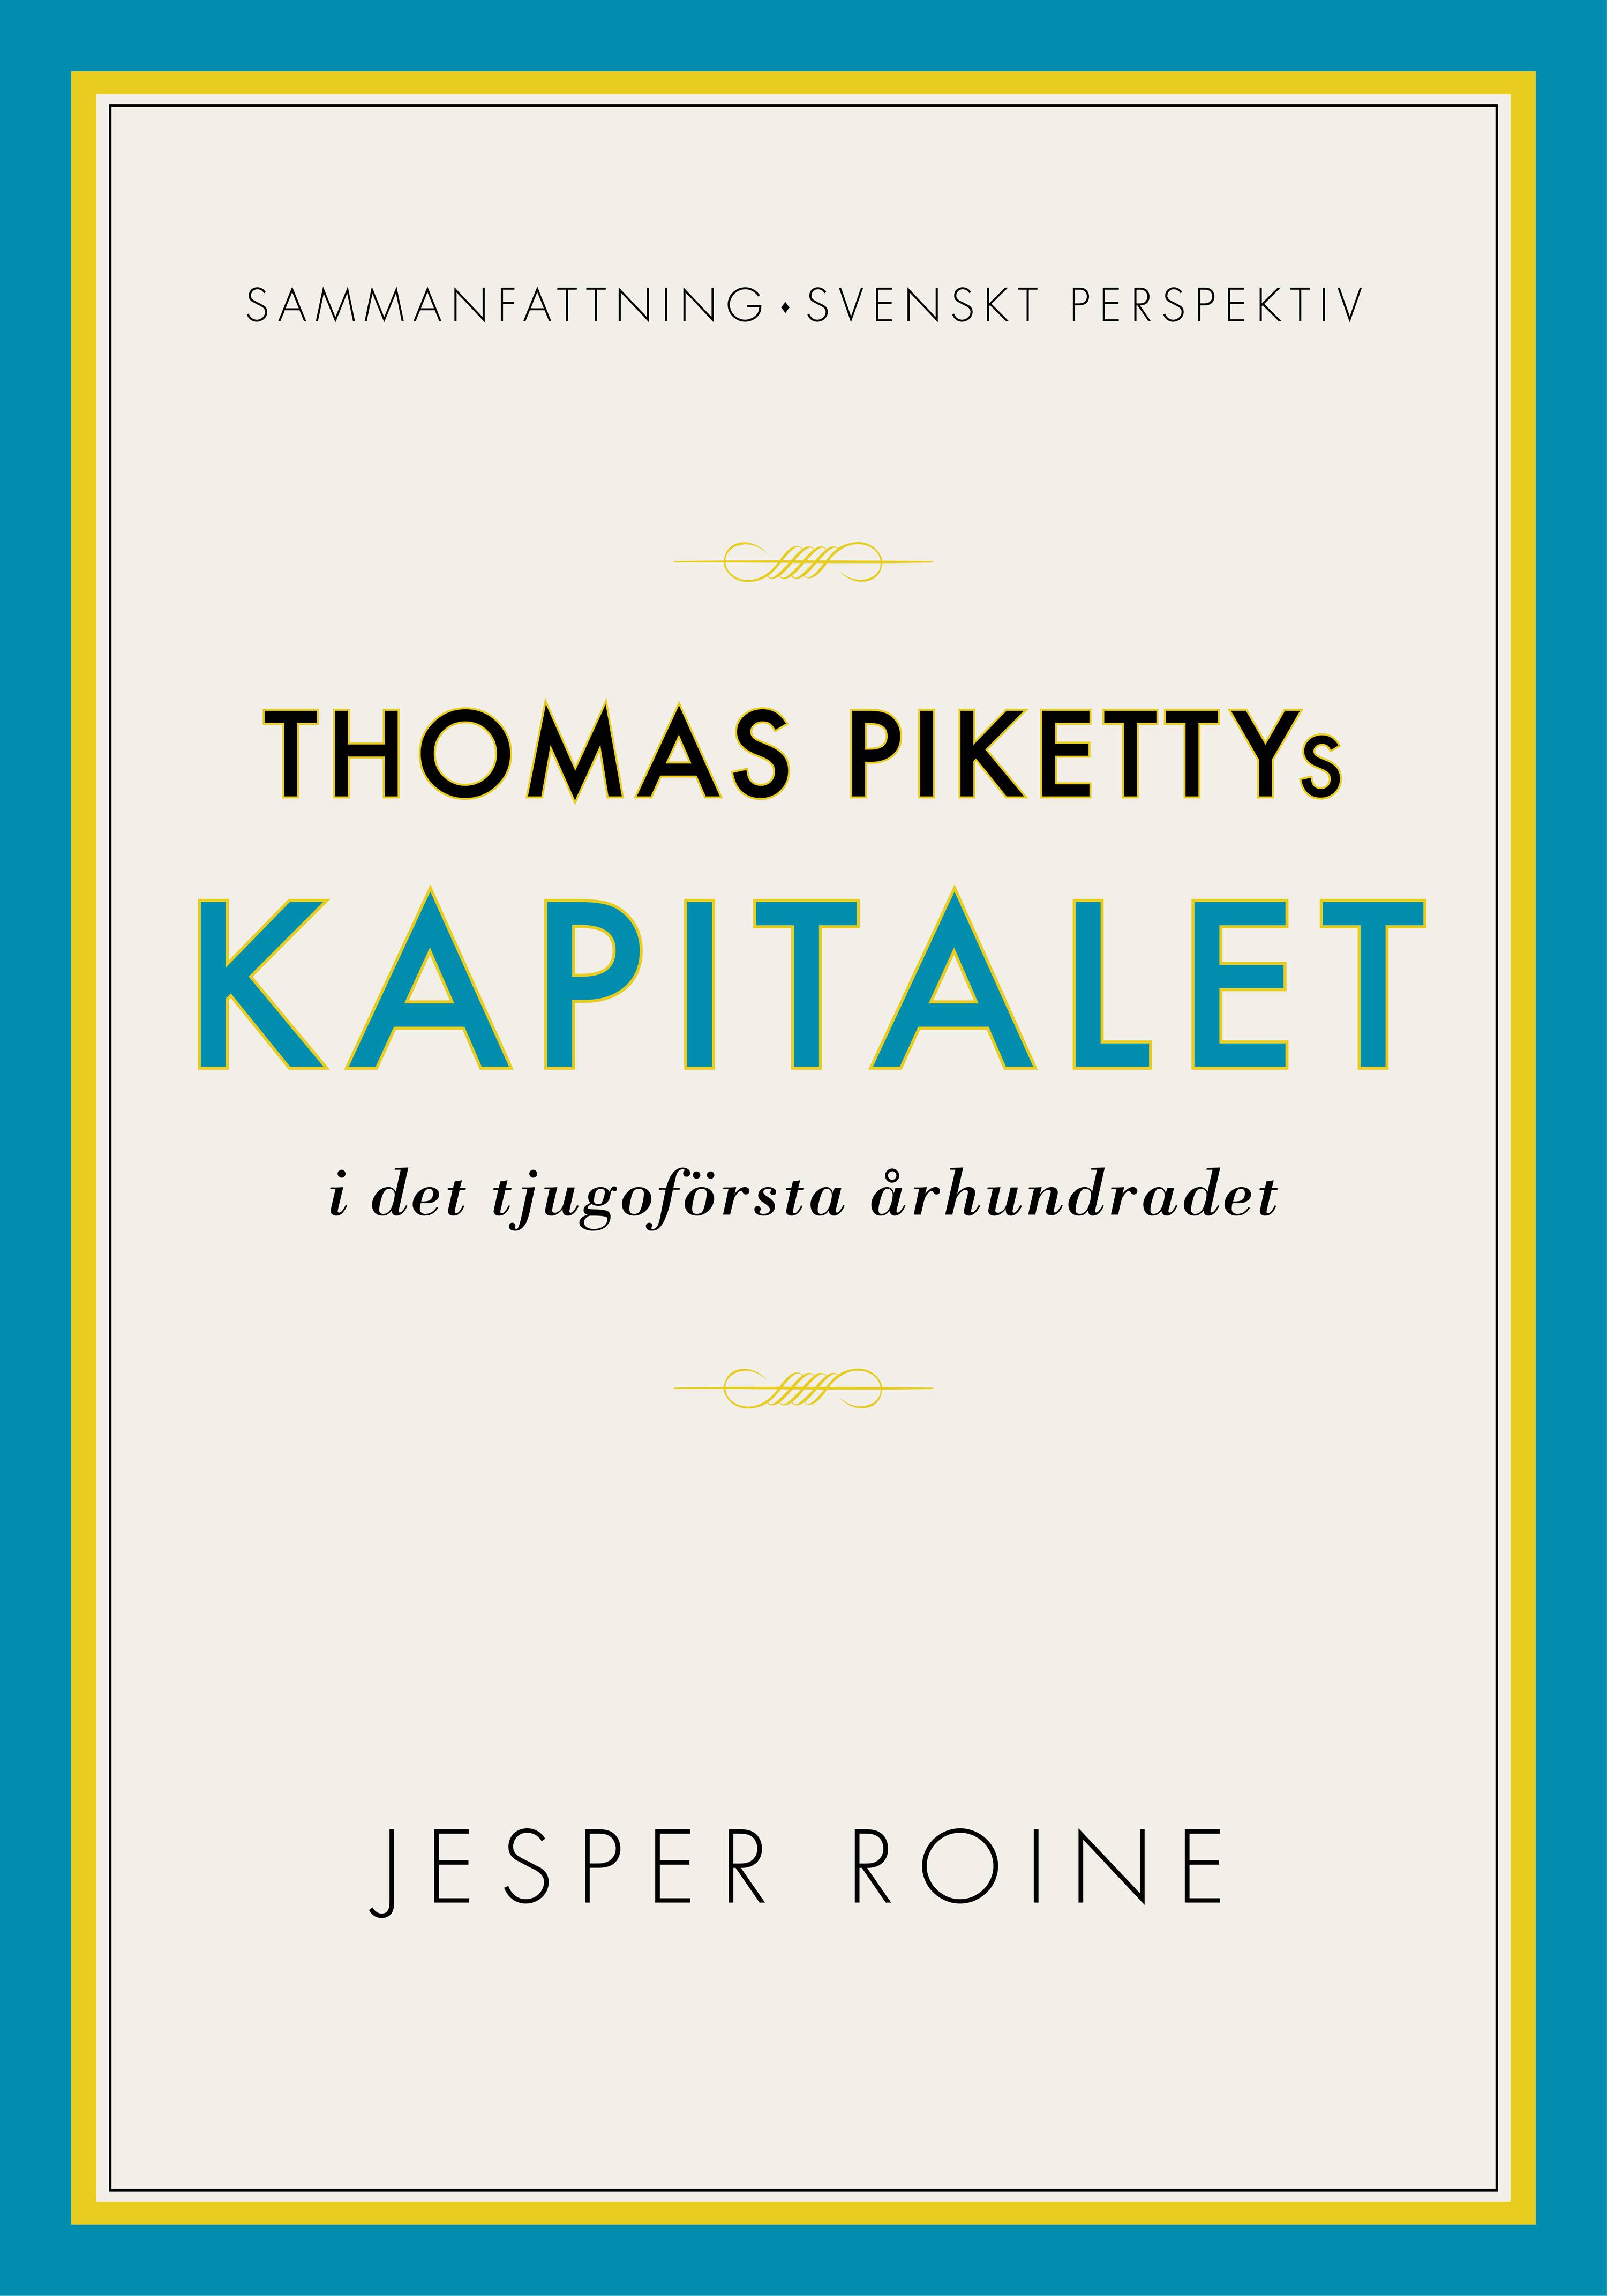 Thomas Pikettys Kapitalet i det tjugoförsta århundradet Sammanfattning sven